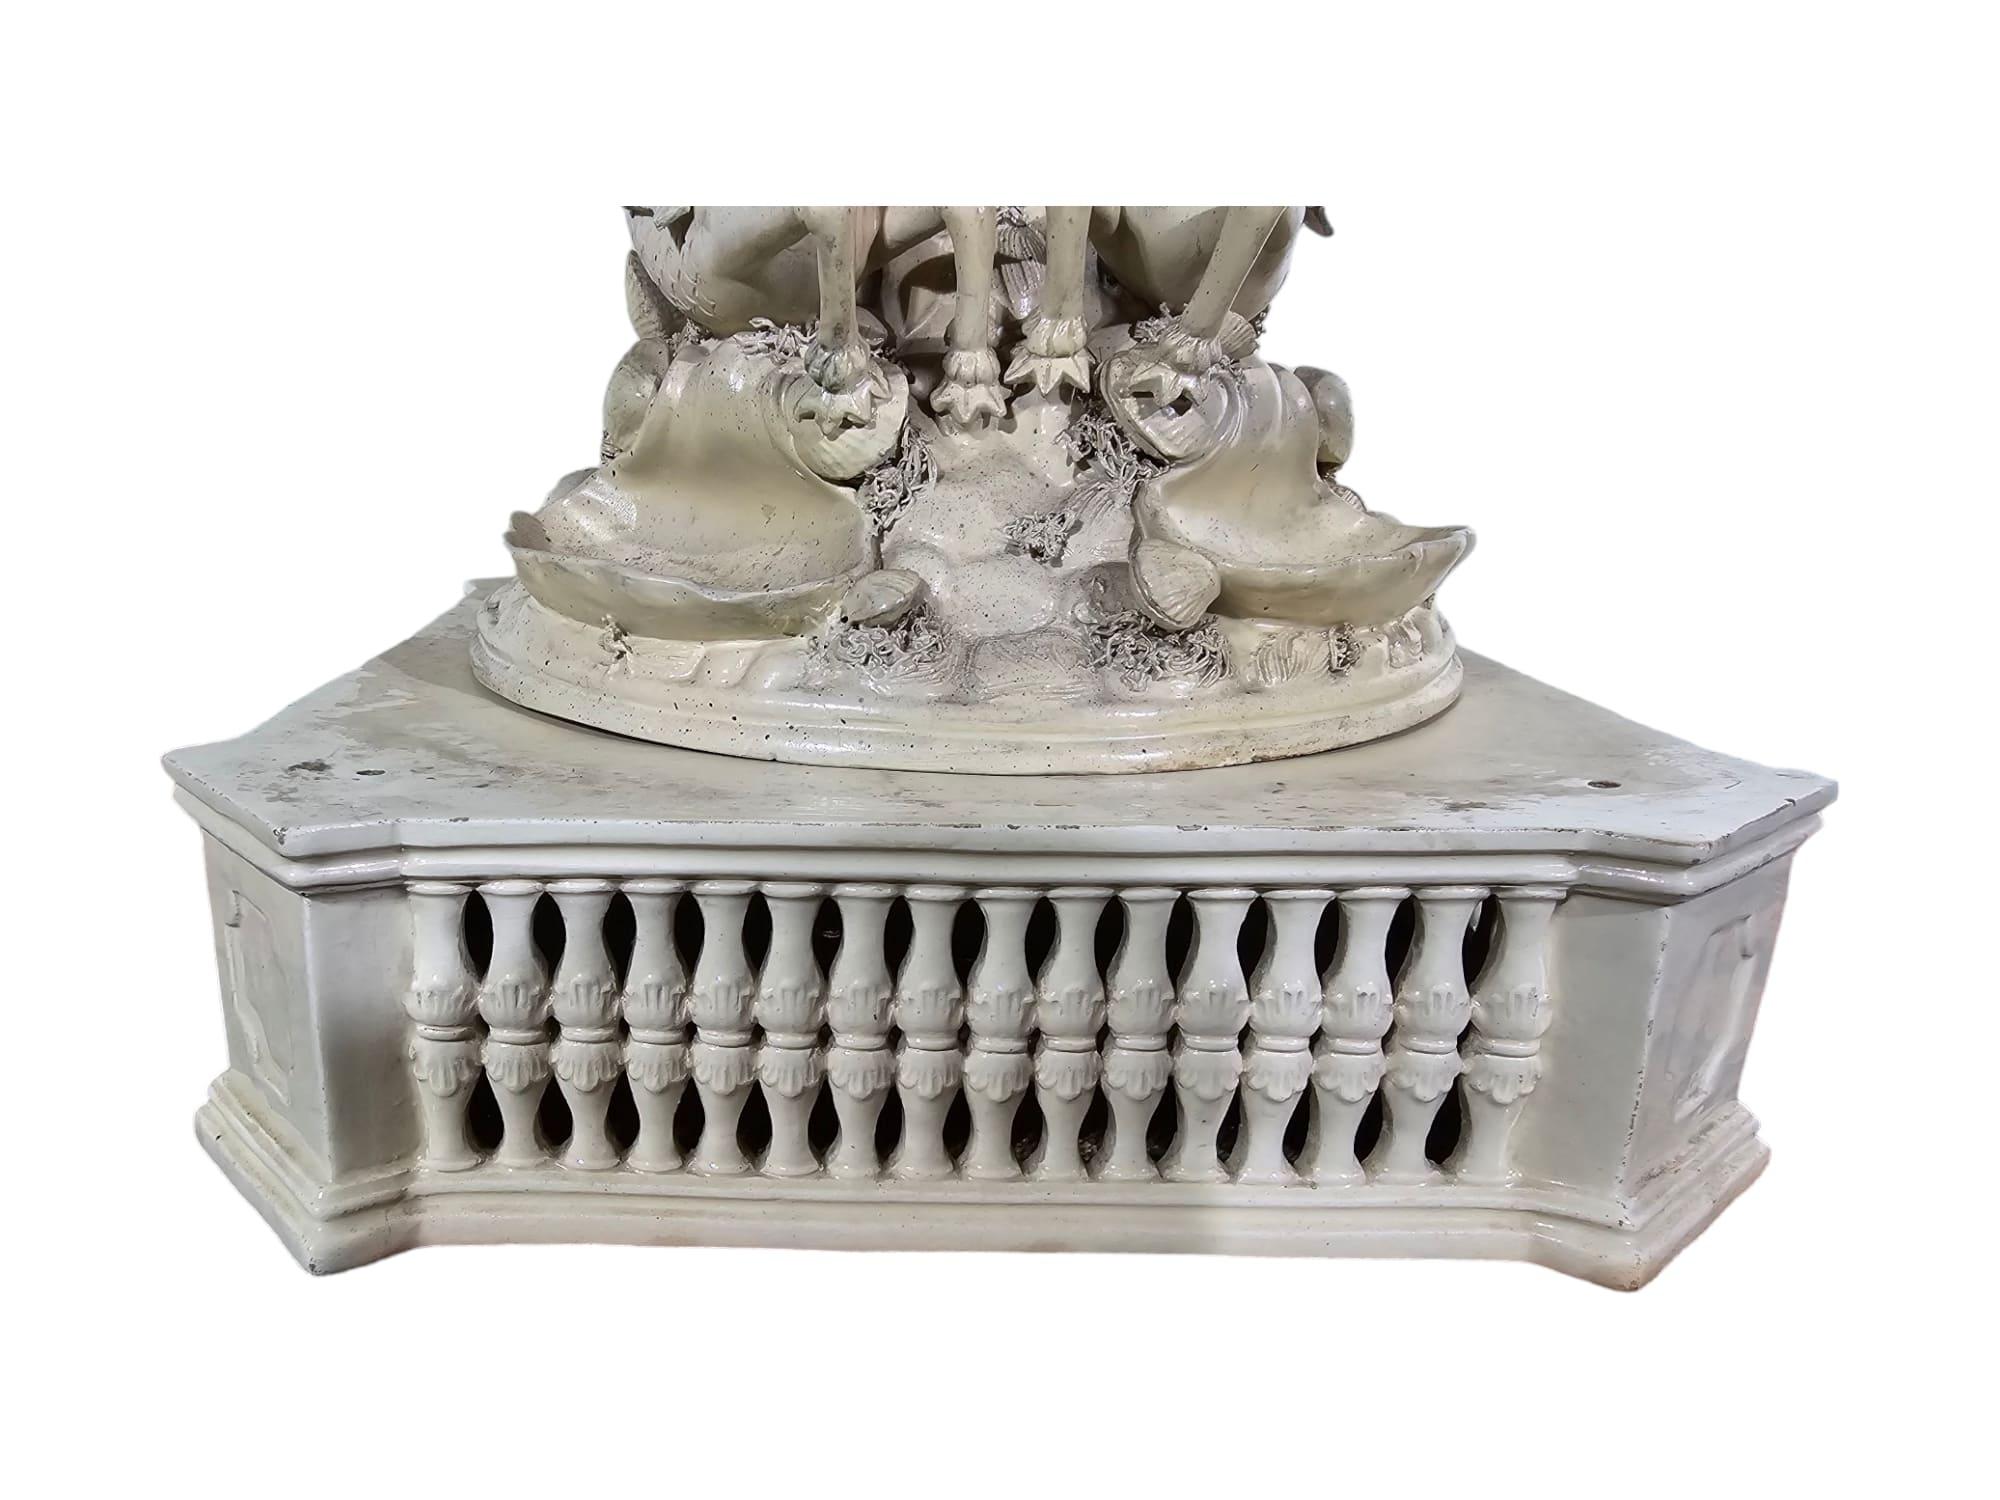 The Triumph of Neptune - Italian Ceramic Statue, Late 19th Century For Sale 16